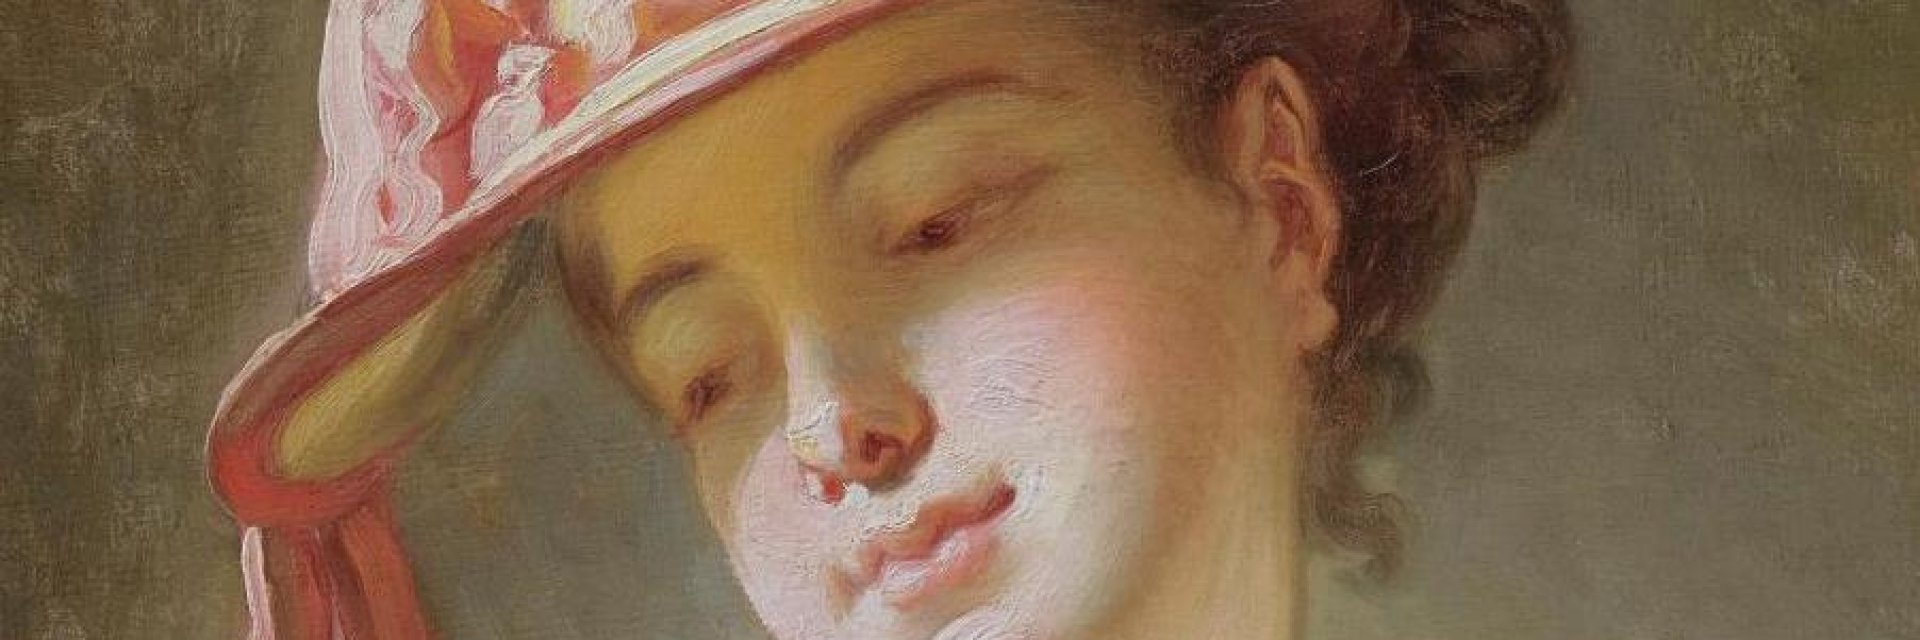 Непозната картина на Фрагонар беше продадена за 3,2 милиона евро 